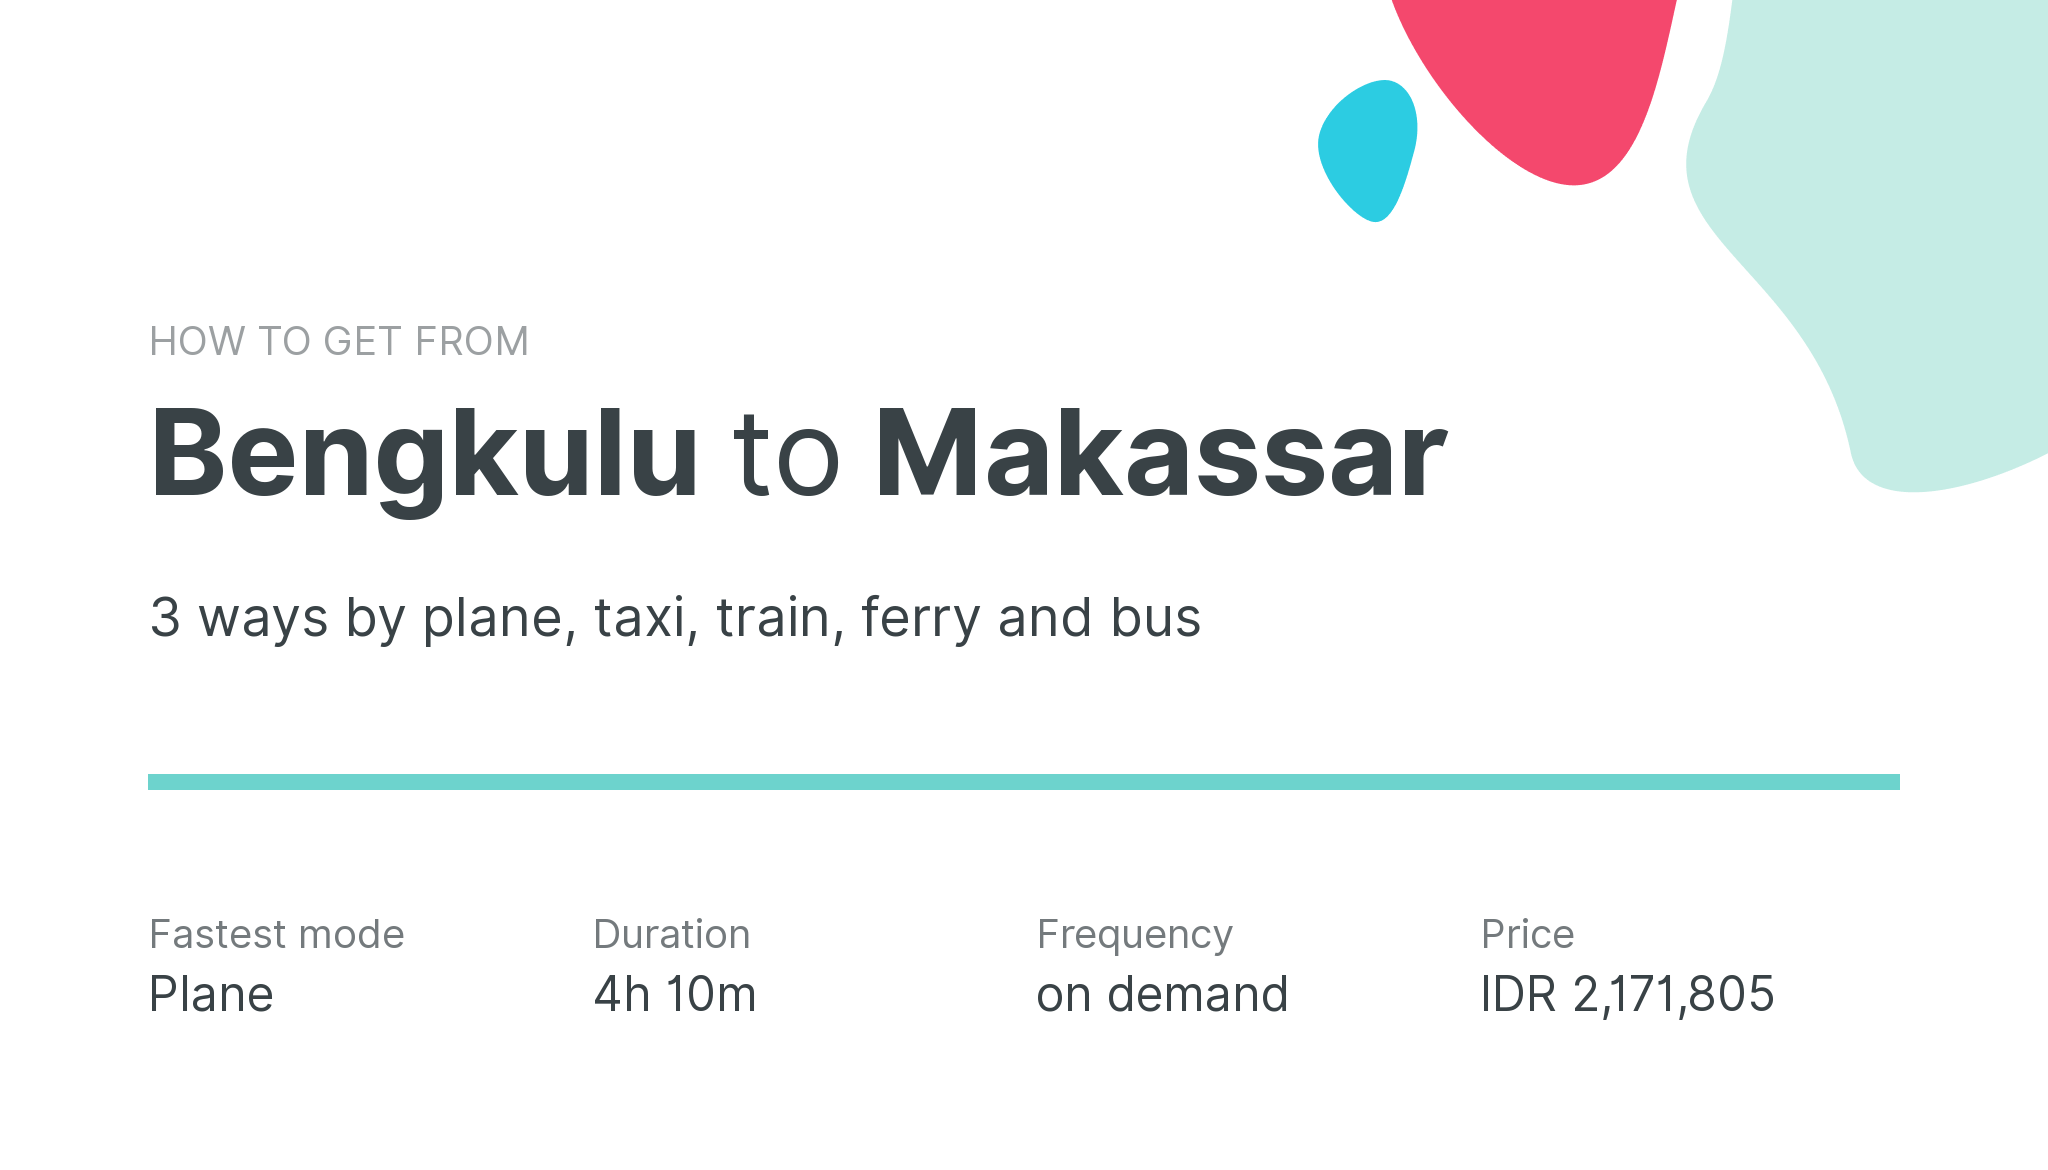 How do I get from Bengkulu to Makassar